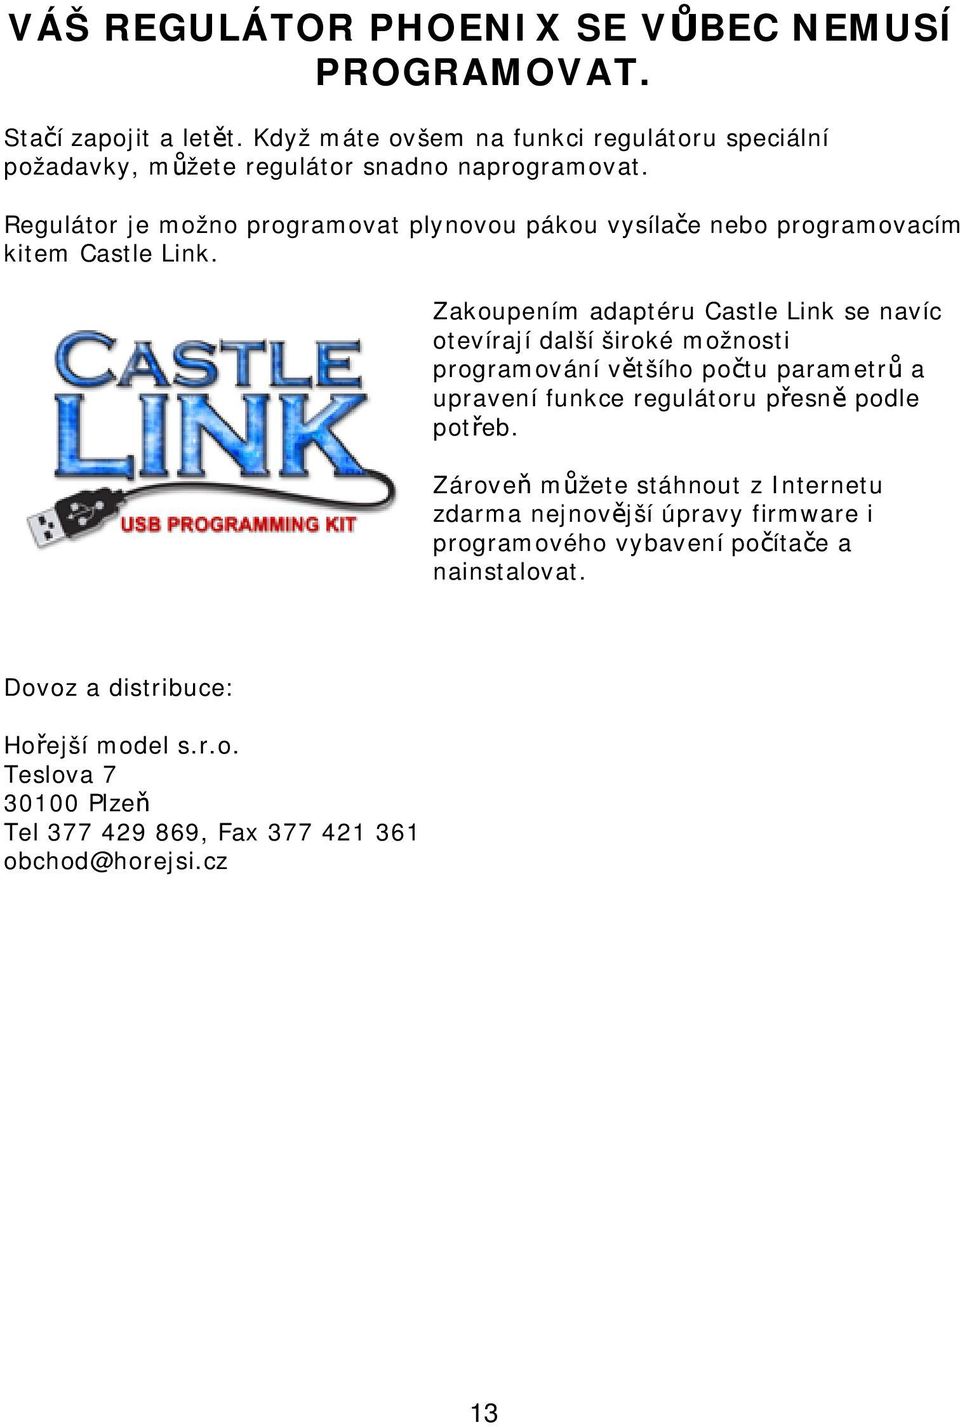 Regulátor je možno programovat plynovou pákou vysílače nebo programovacím kitem Castle Link.